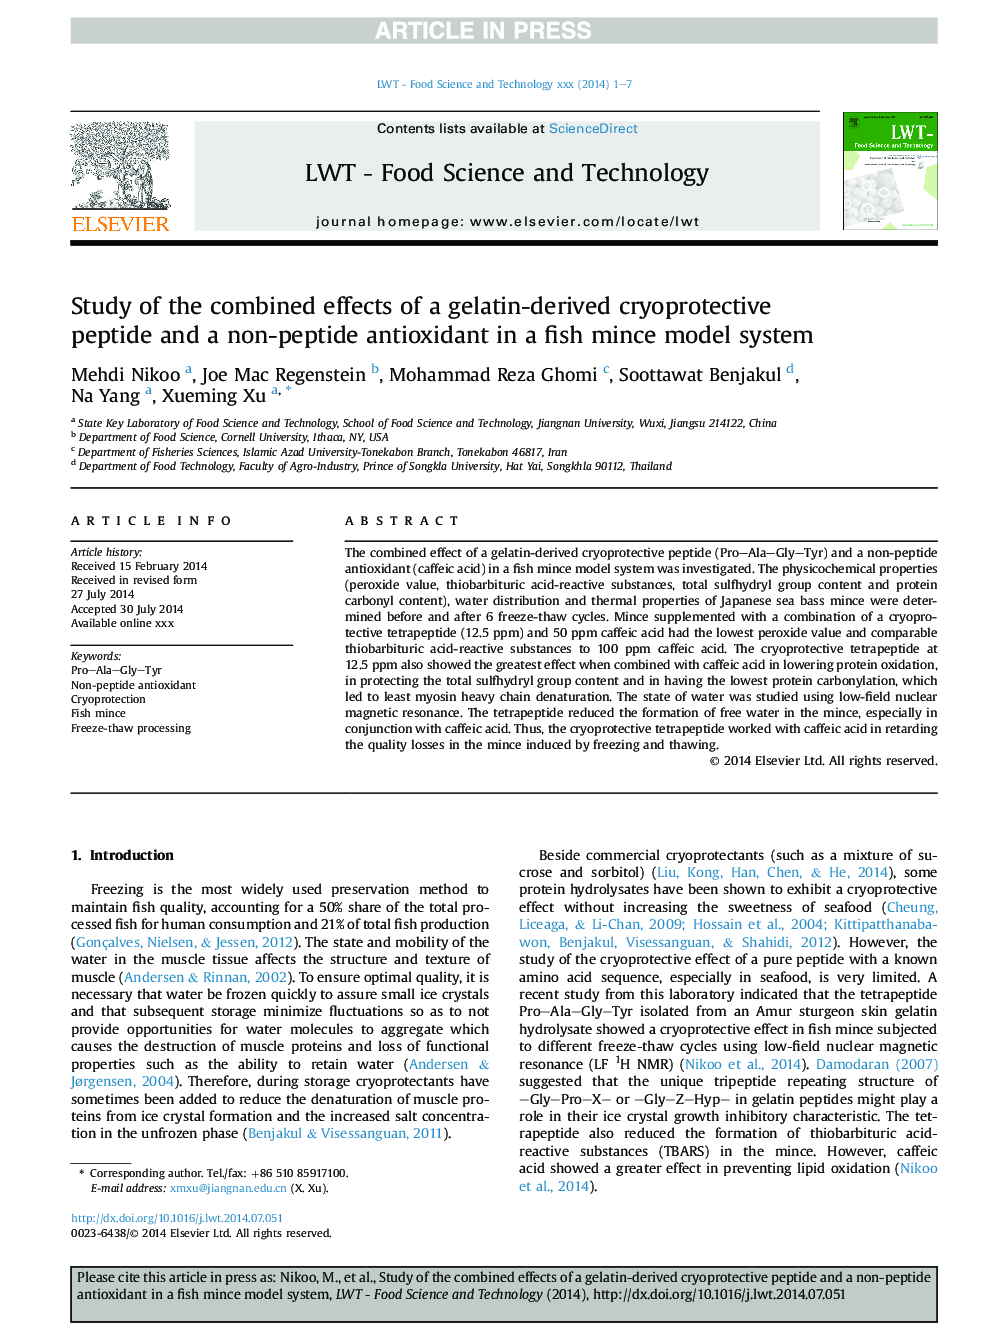 بررسی اثر ترکیبی پپتید گریفی محافظتی ژلاتین و یک آنتی اکسیدان غیر پپتیدی در یک سیستم مدل ماهی قزل آلا 